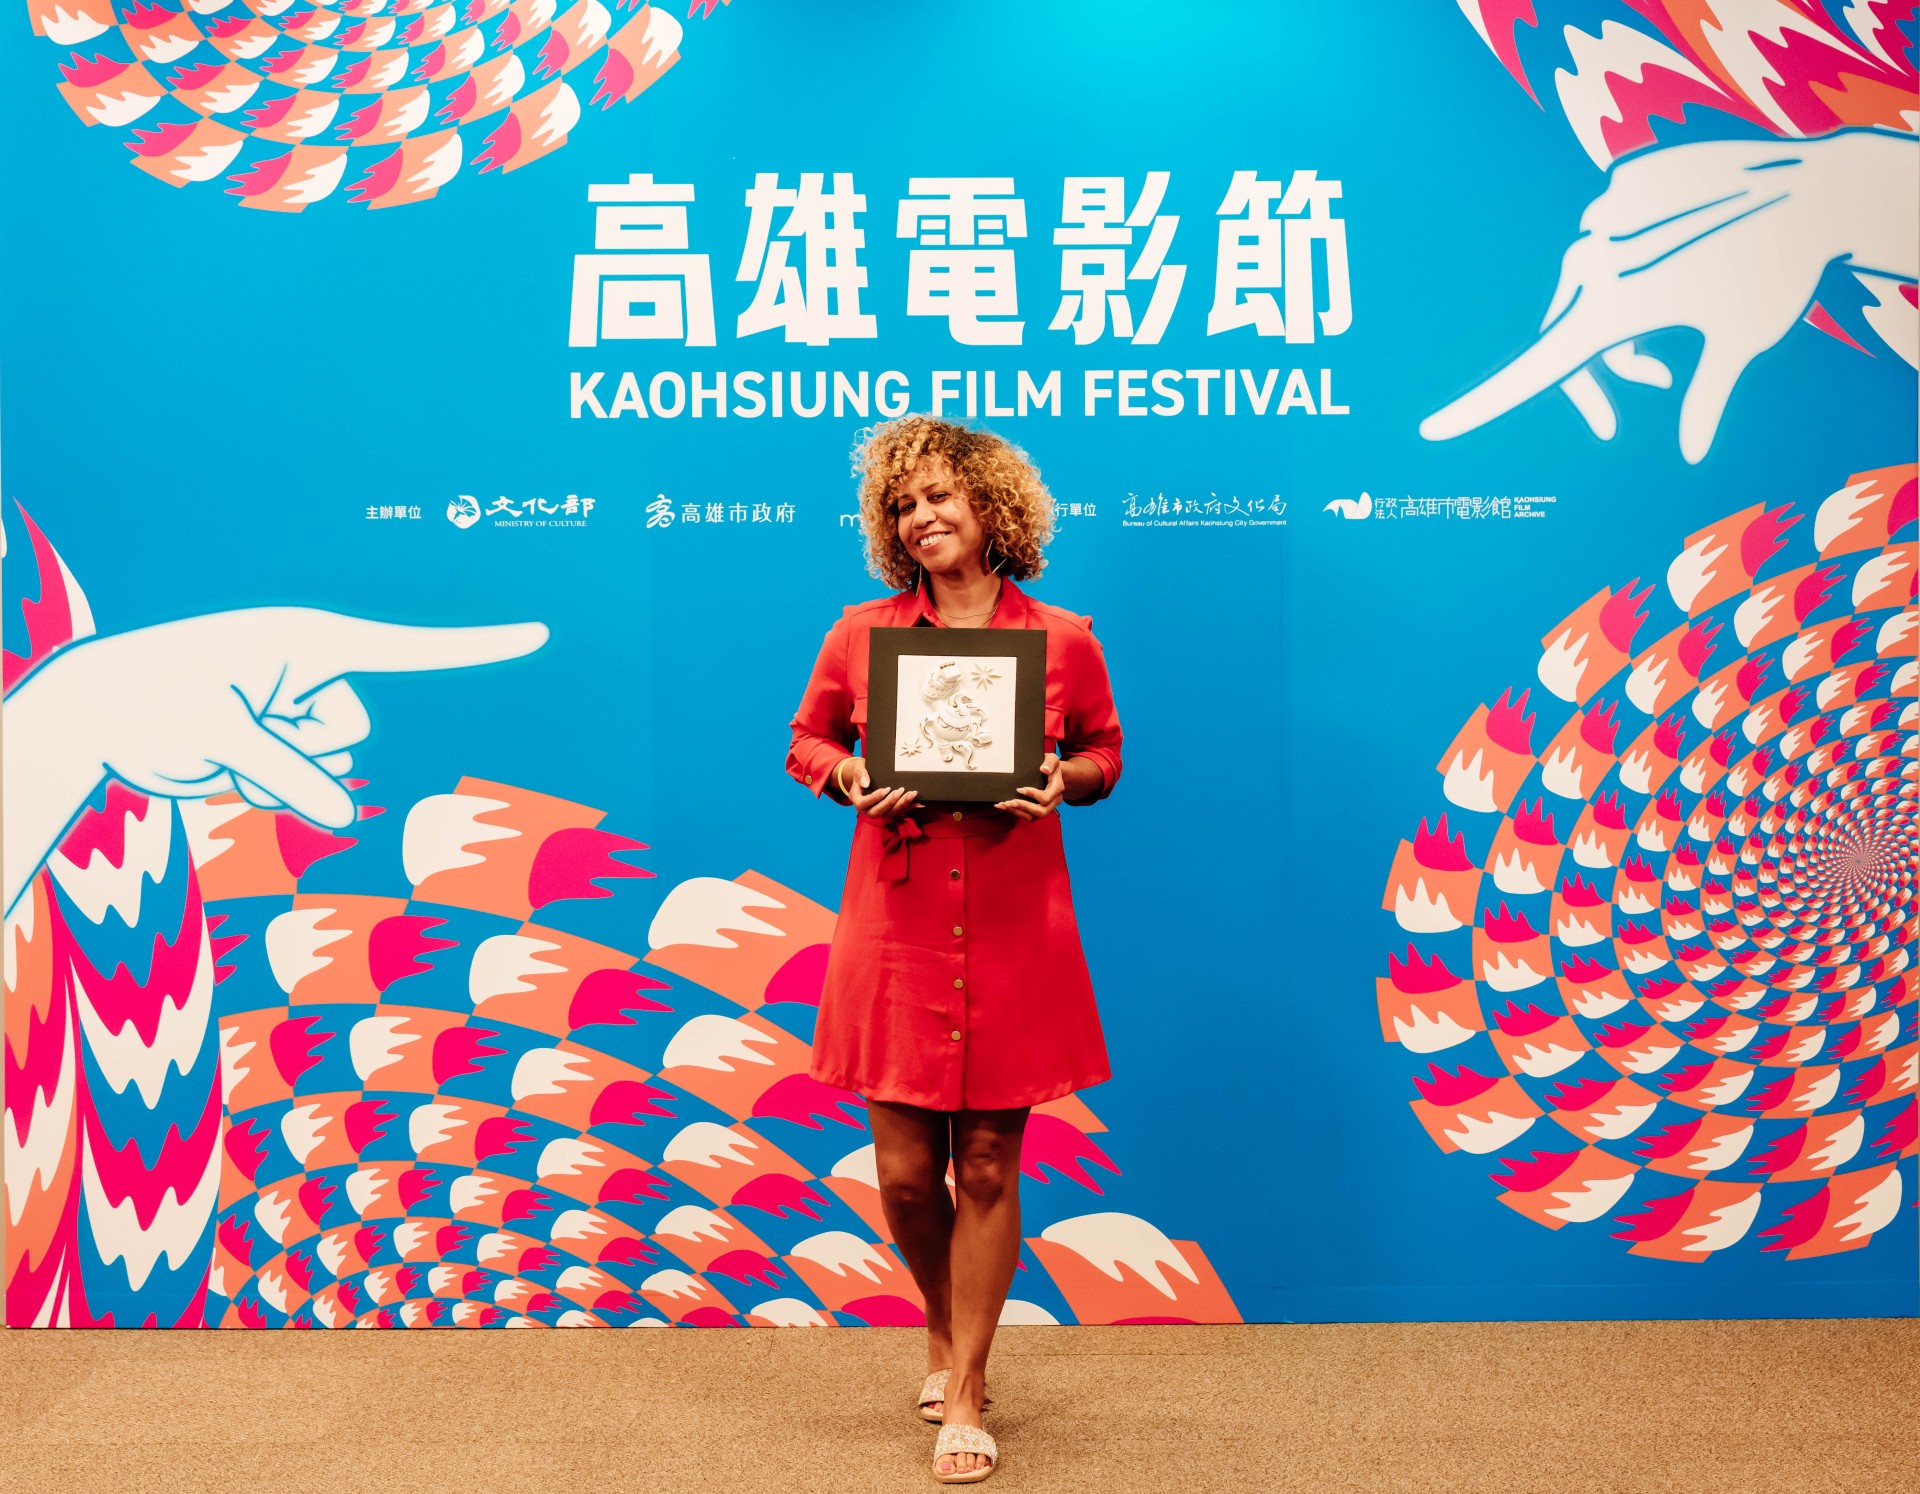 XR評審團特別提及則由英國《未來大國民》獲獎，導演凱倫帕默爾表示很開心能在台灣榮獎，因為作品與社會正義有關，希望能透過此作品啟發人們。-圖片